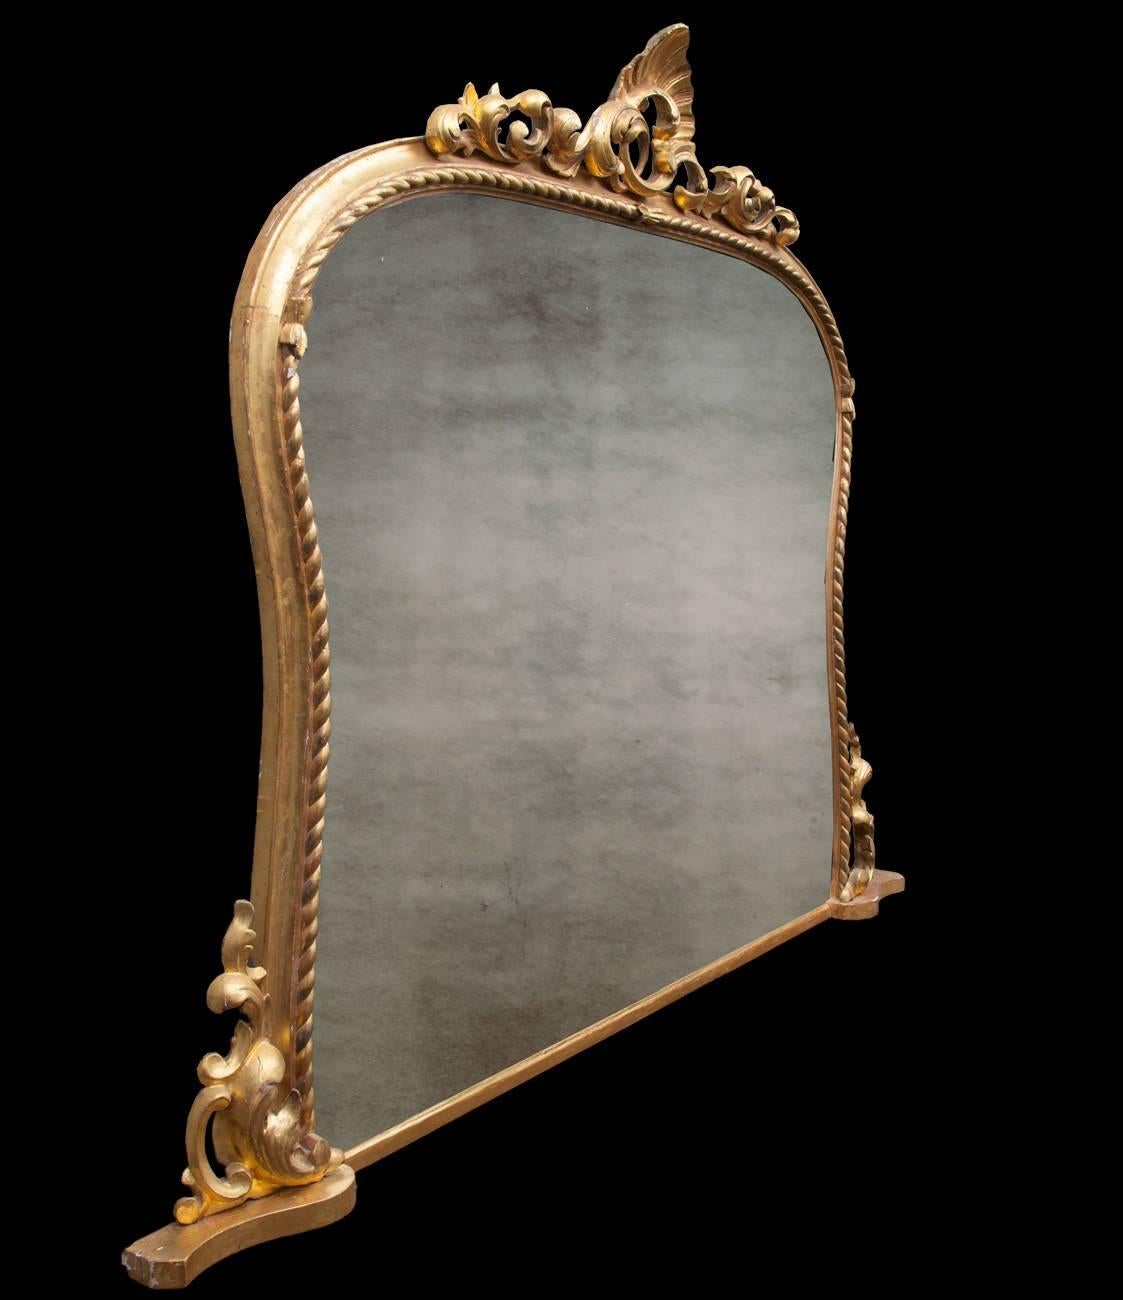 Grand miroir trumeau en bois doré sculpté irlandais. Le cadre de forme décoré de torsades de corde, surmonté d'un fronton feuillagé orné de sculptures flanquées à la base. La dorure d'origine est d'une belle couleur et l'état général du miroir est